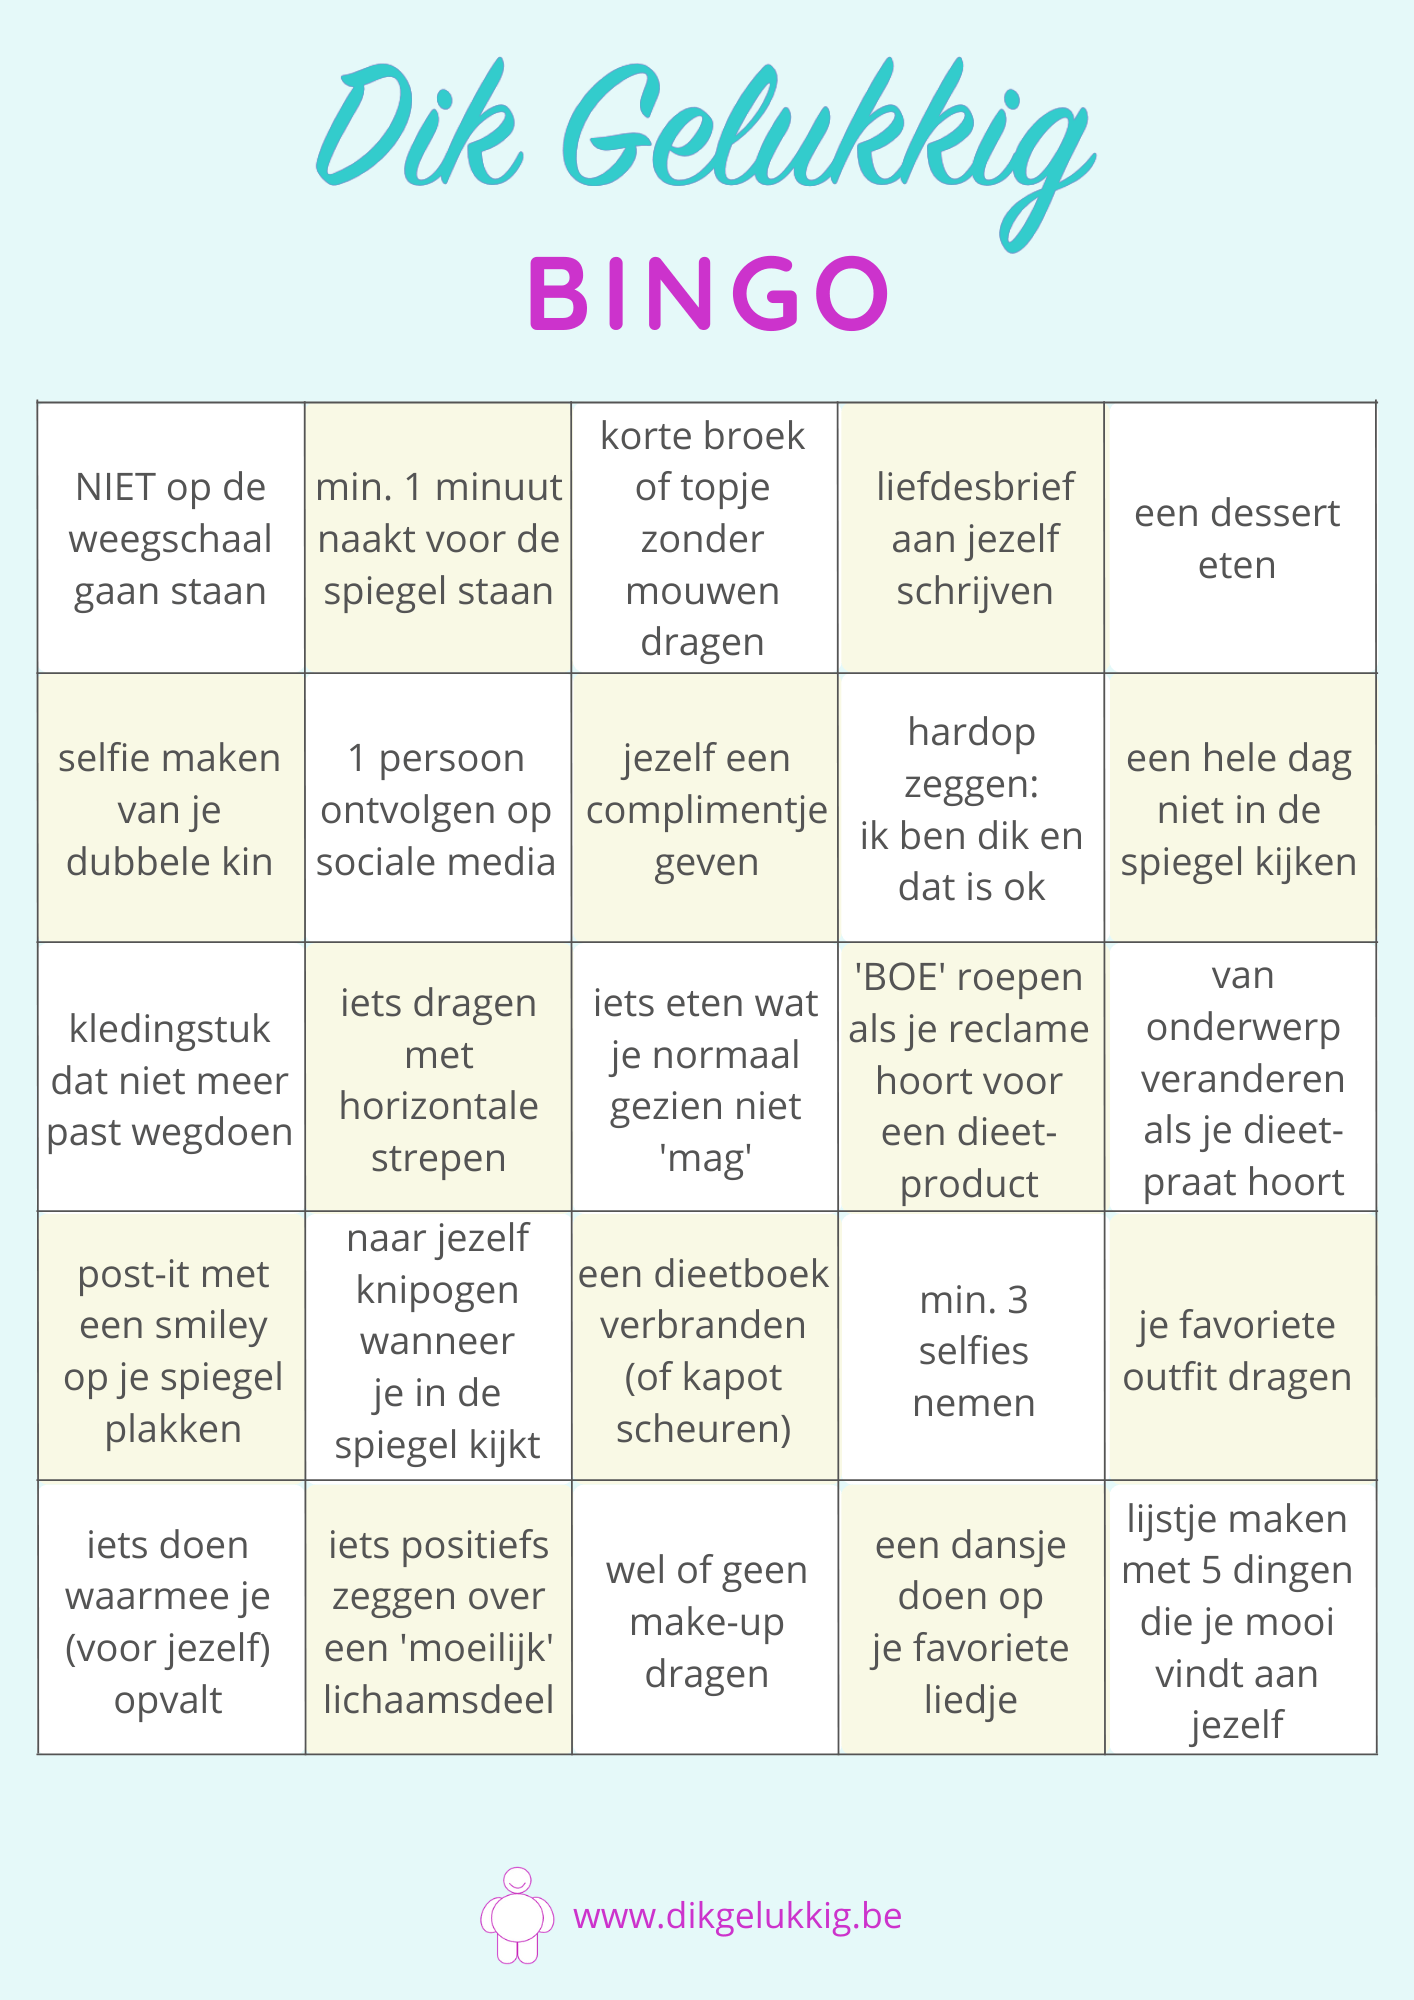 Een bingokaart met verschillende opdrachten